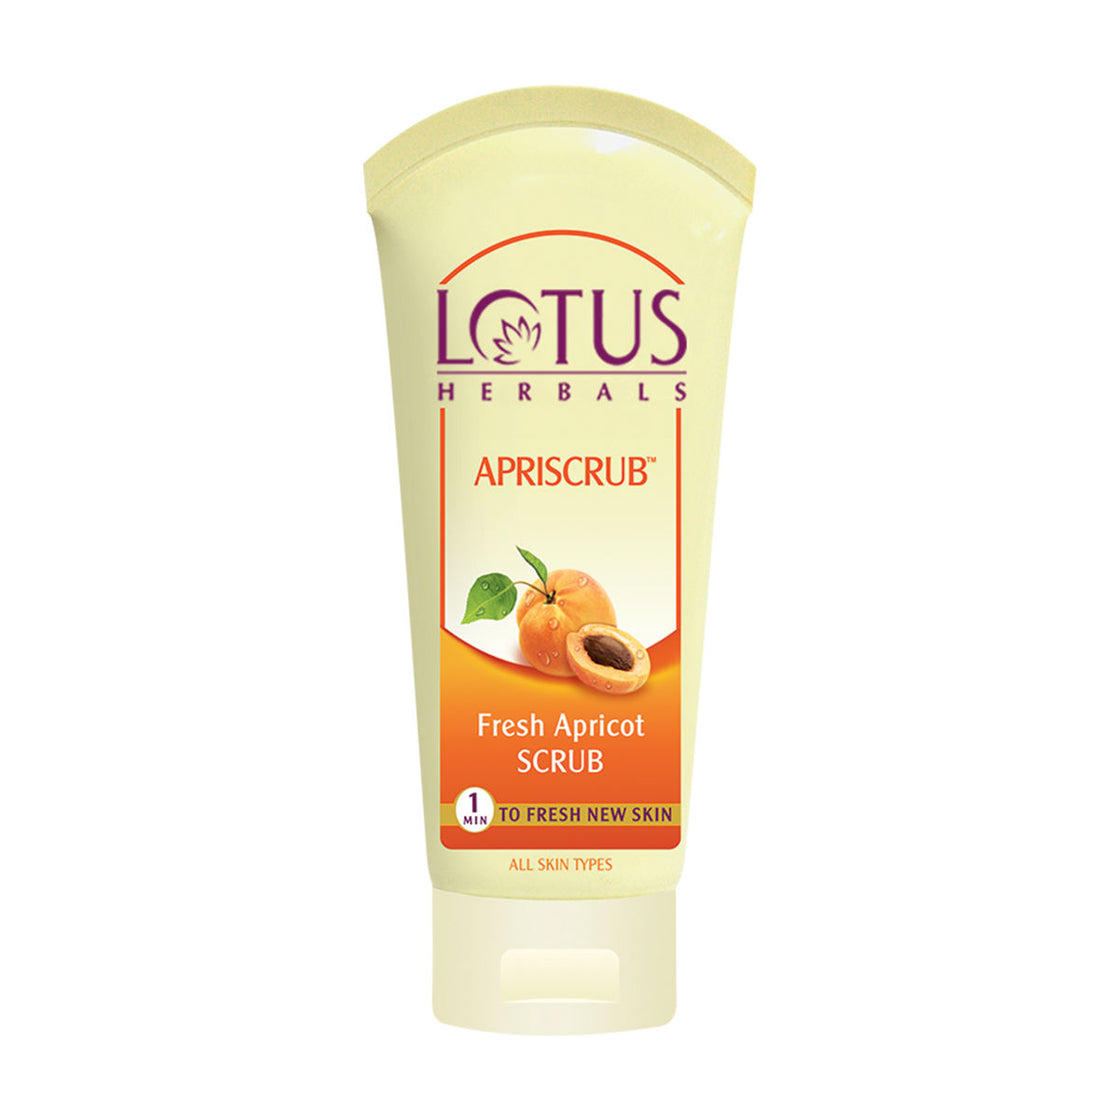 Lotus Herbals Apriscrub Fresh Apricot Scrub (60g)